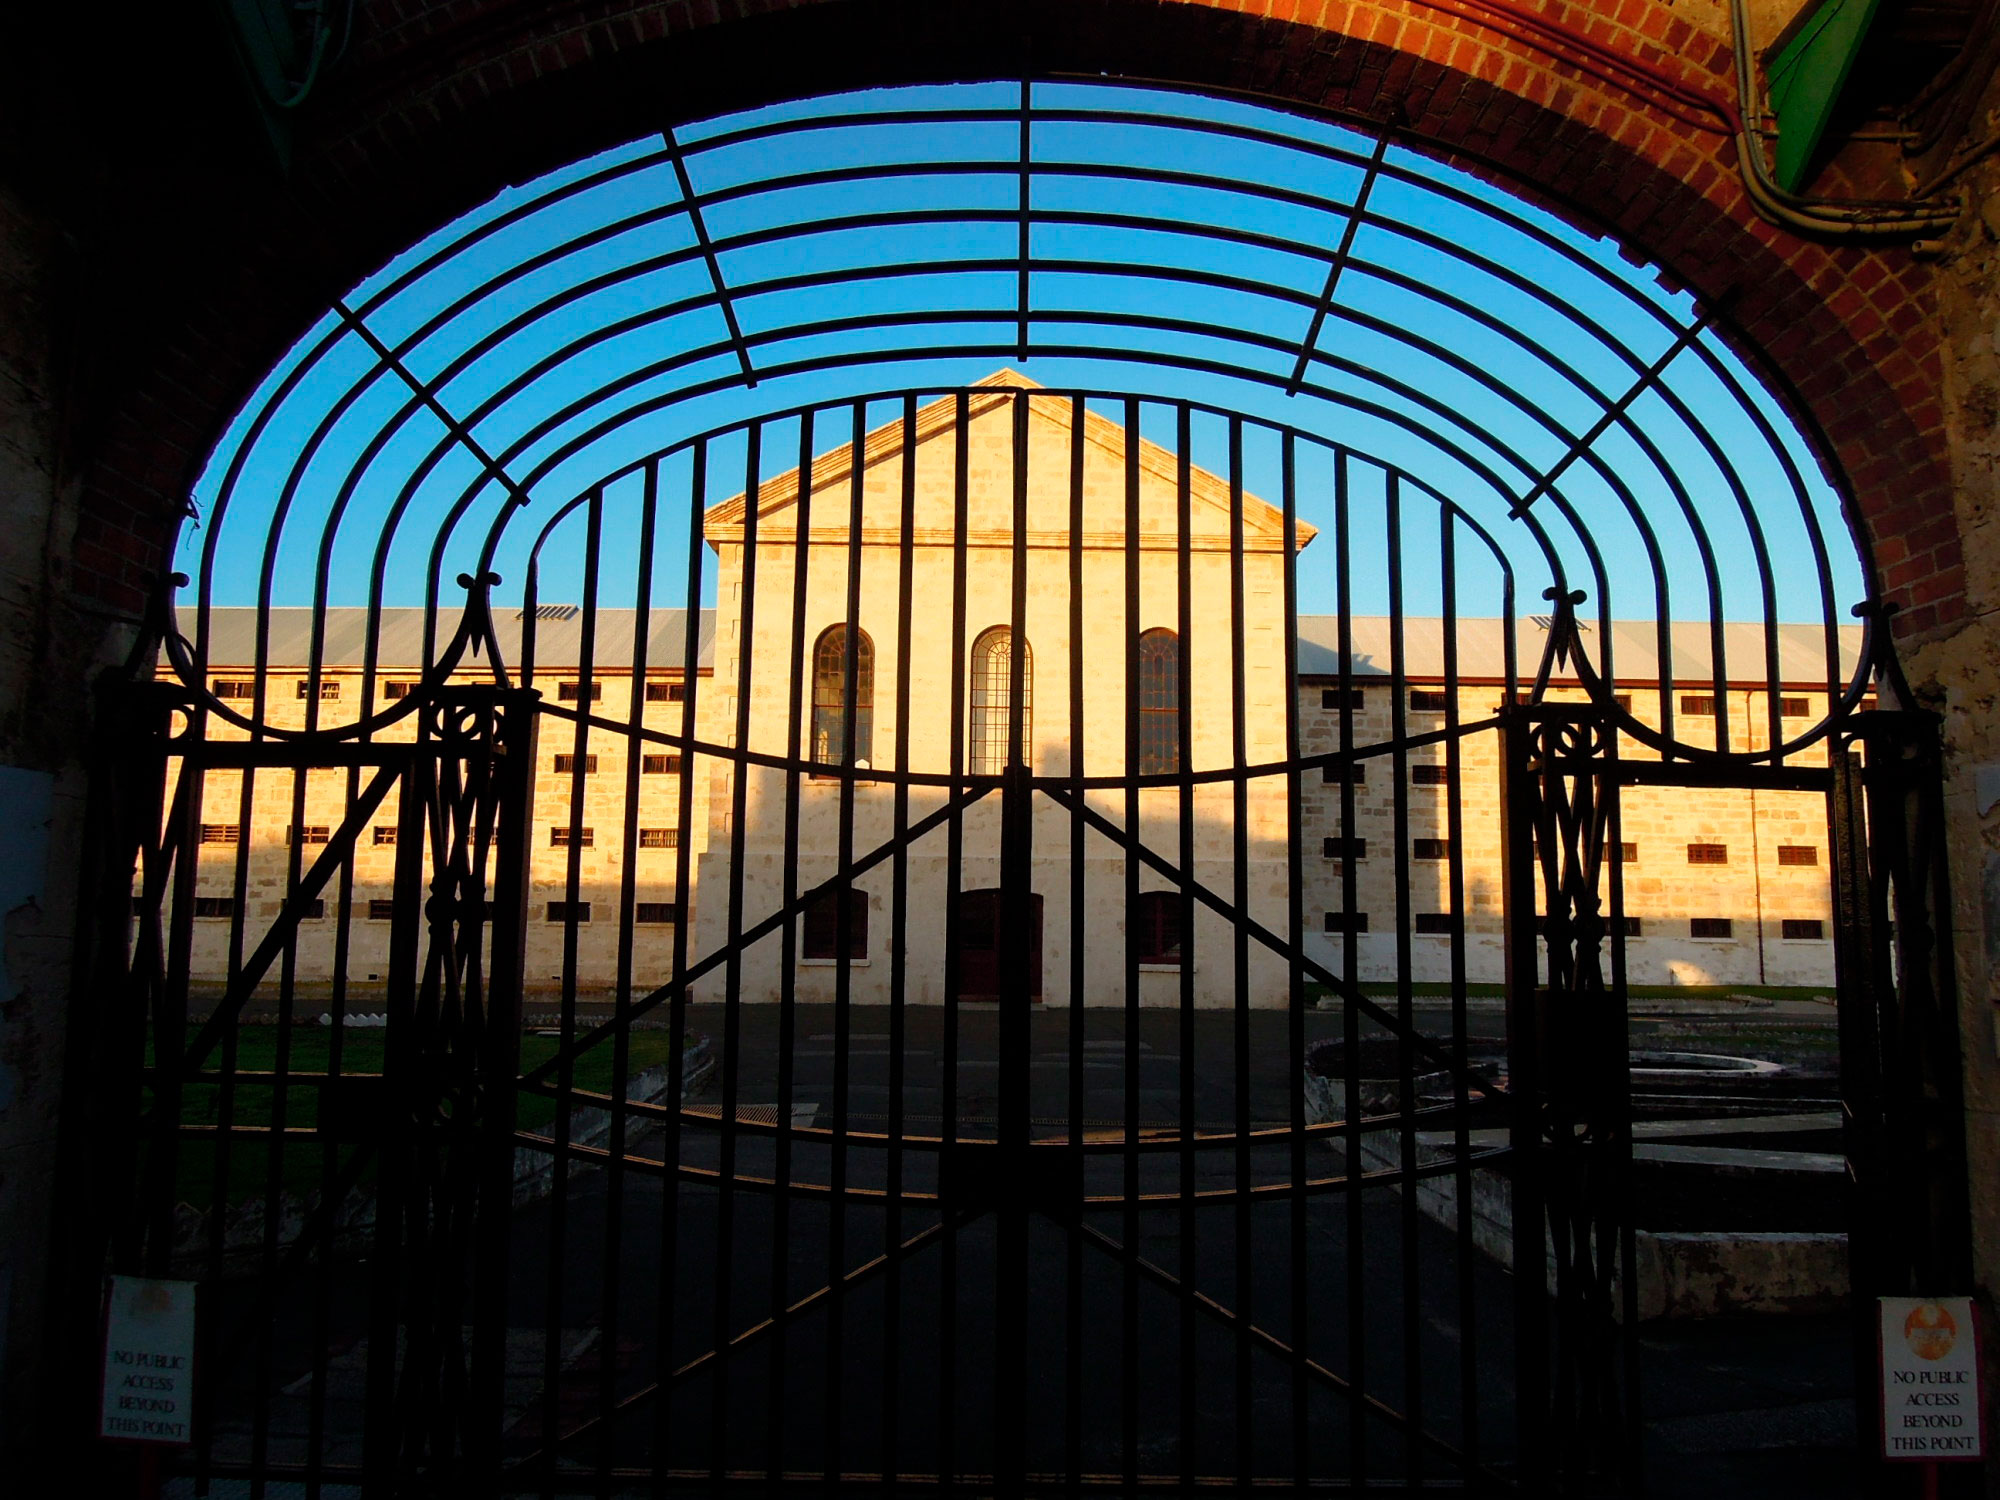 The gates of the convict-built Fremantle Prison, 1962.